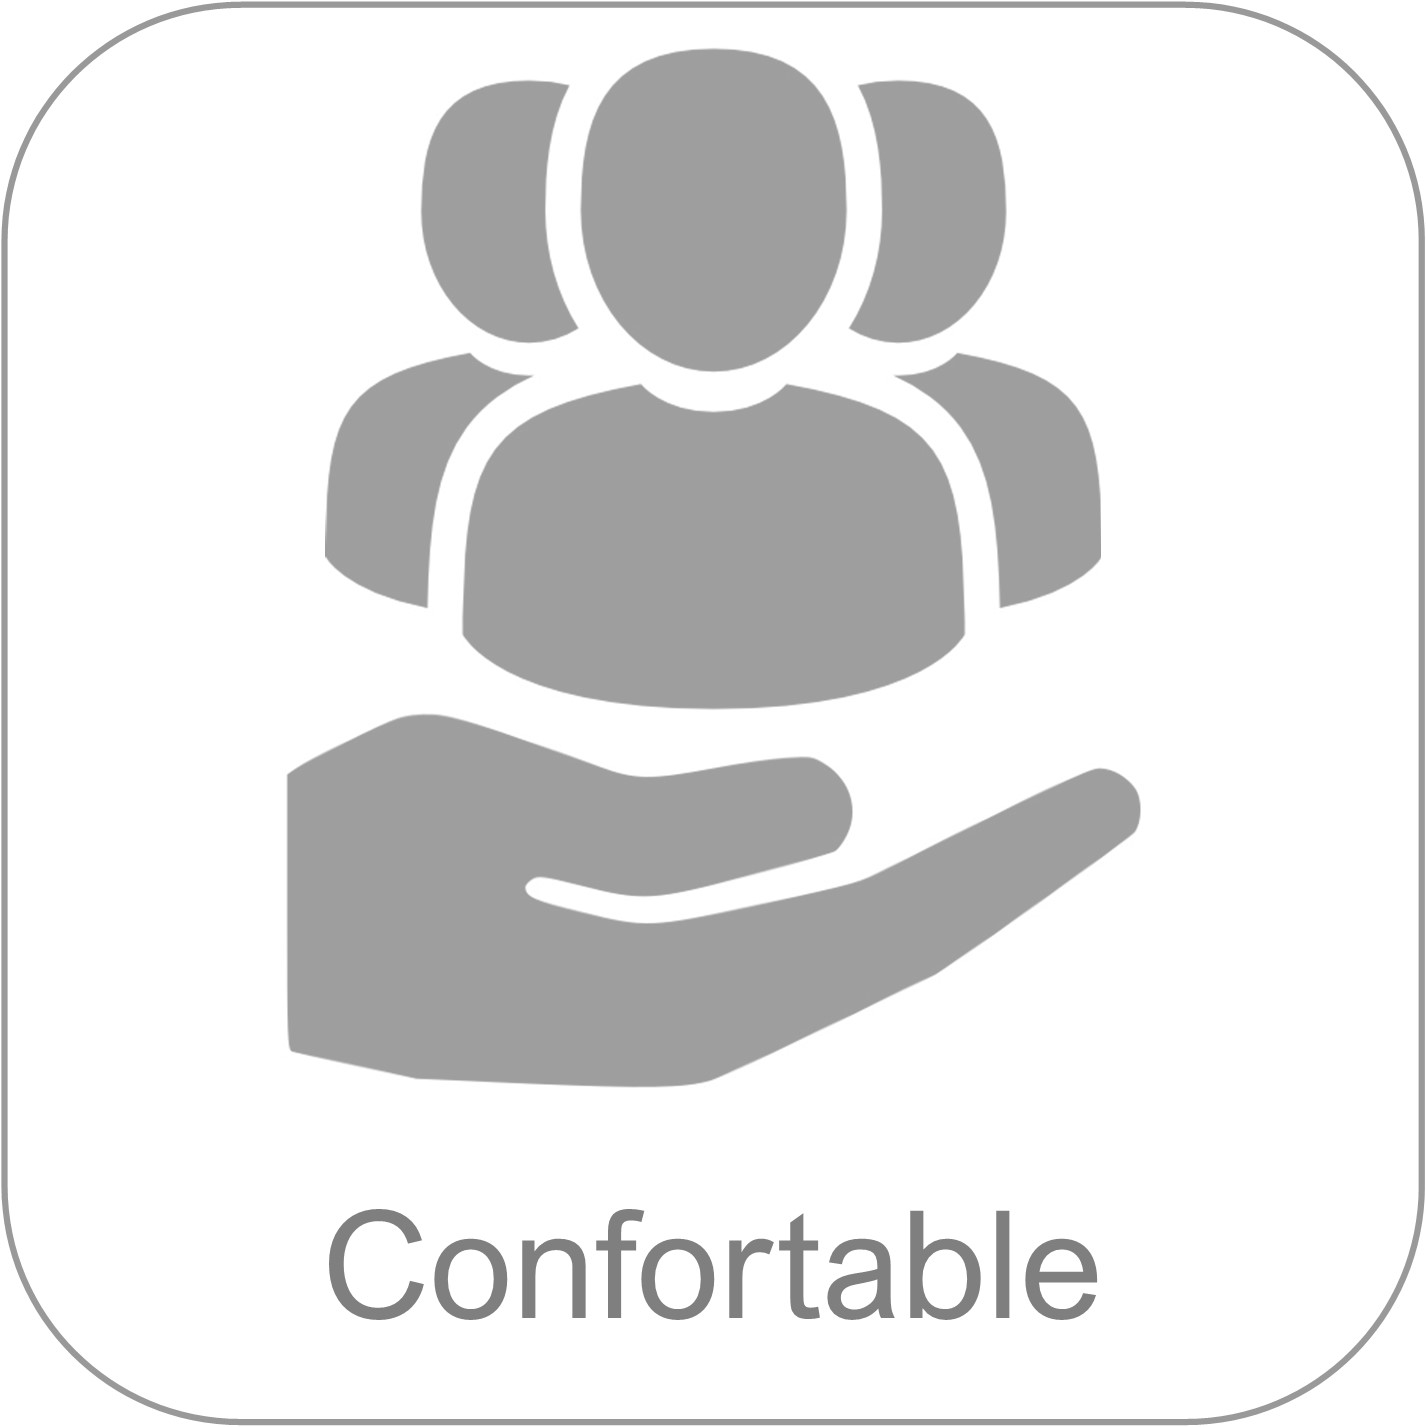 Confortable - Cuida a sus trabajadores